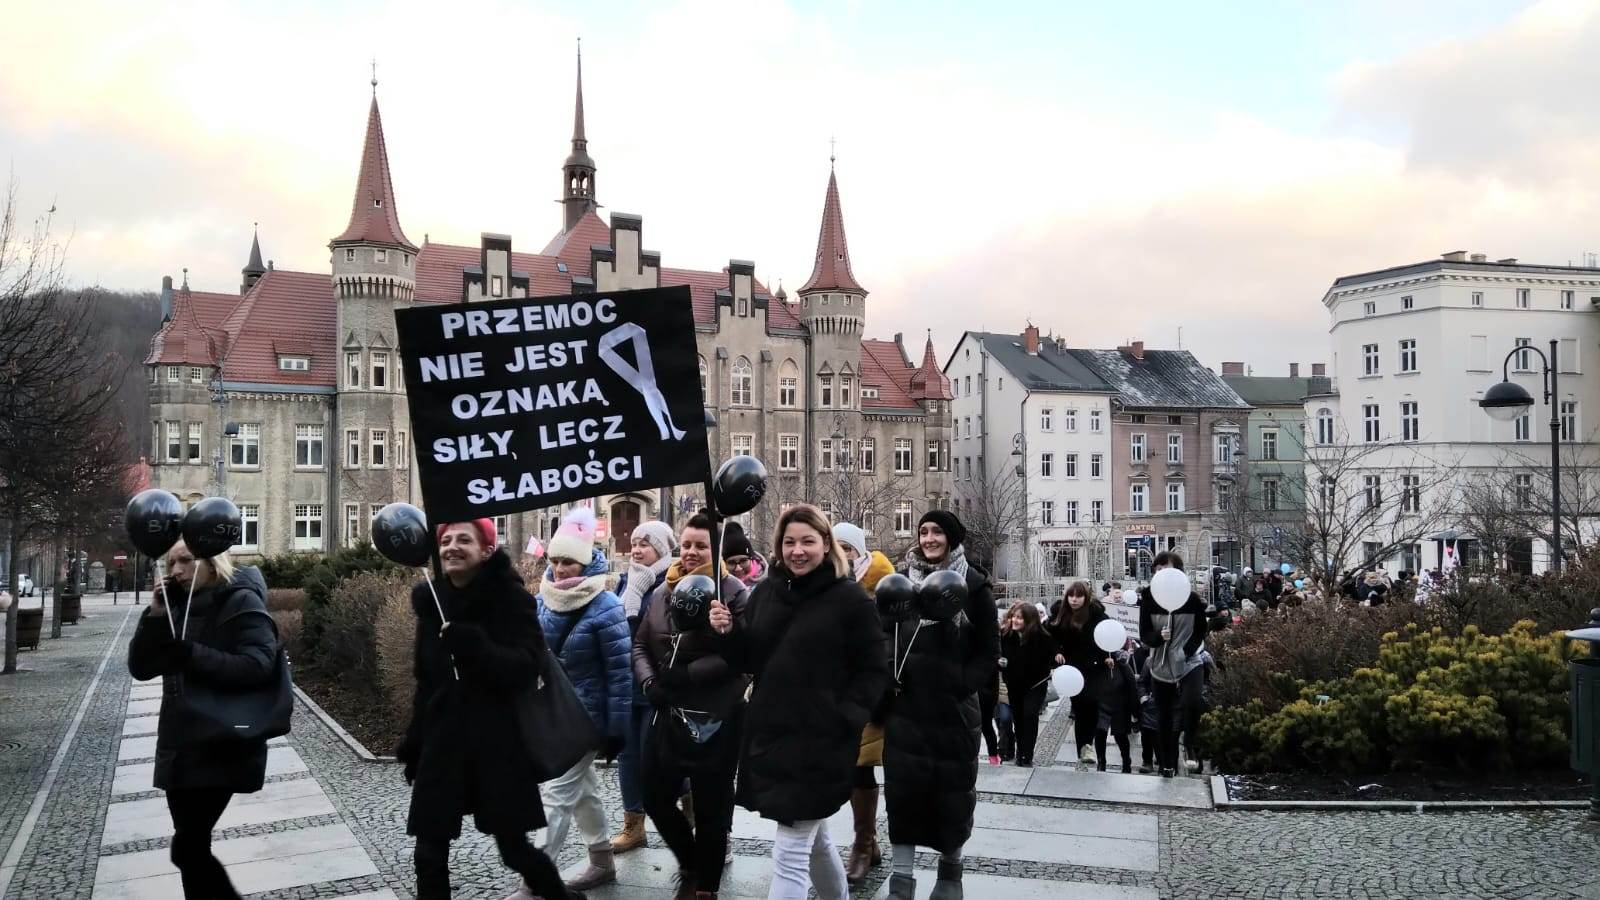 [Tekst ALT: zdjęcie przedstawia plac Magistracki i Ratusz, na tle którego widoczna jest grupa osób biorąca udział w marszu, trzymająca plakat z hasłem: przemoc nie jest oznaką siły lecz słabości. Obok hasła namalowany jest symbol białej wstążki]